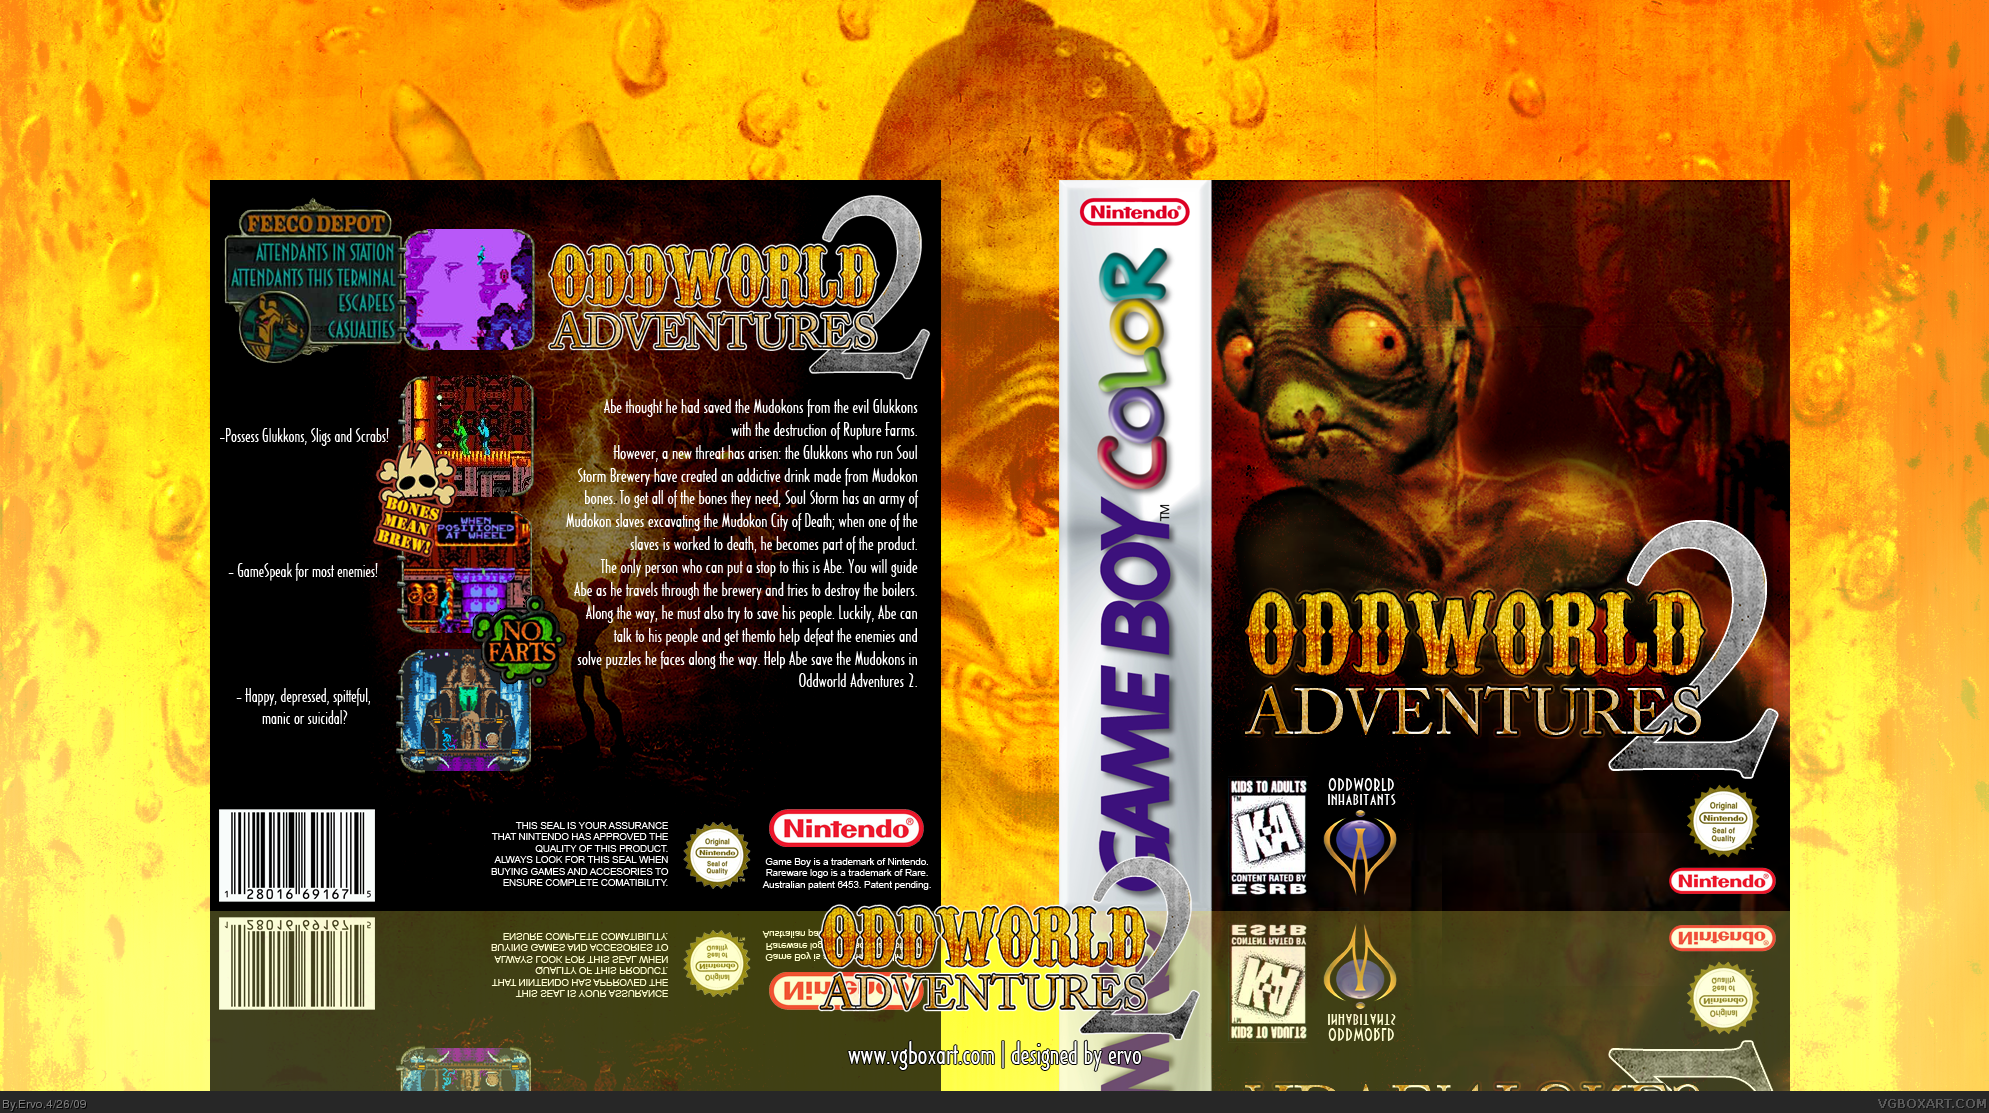 Oddworld Adventures 2 box cover